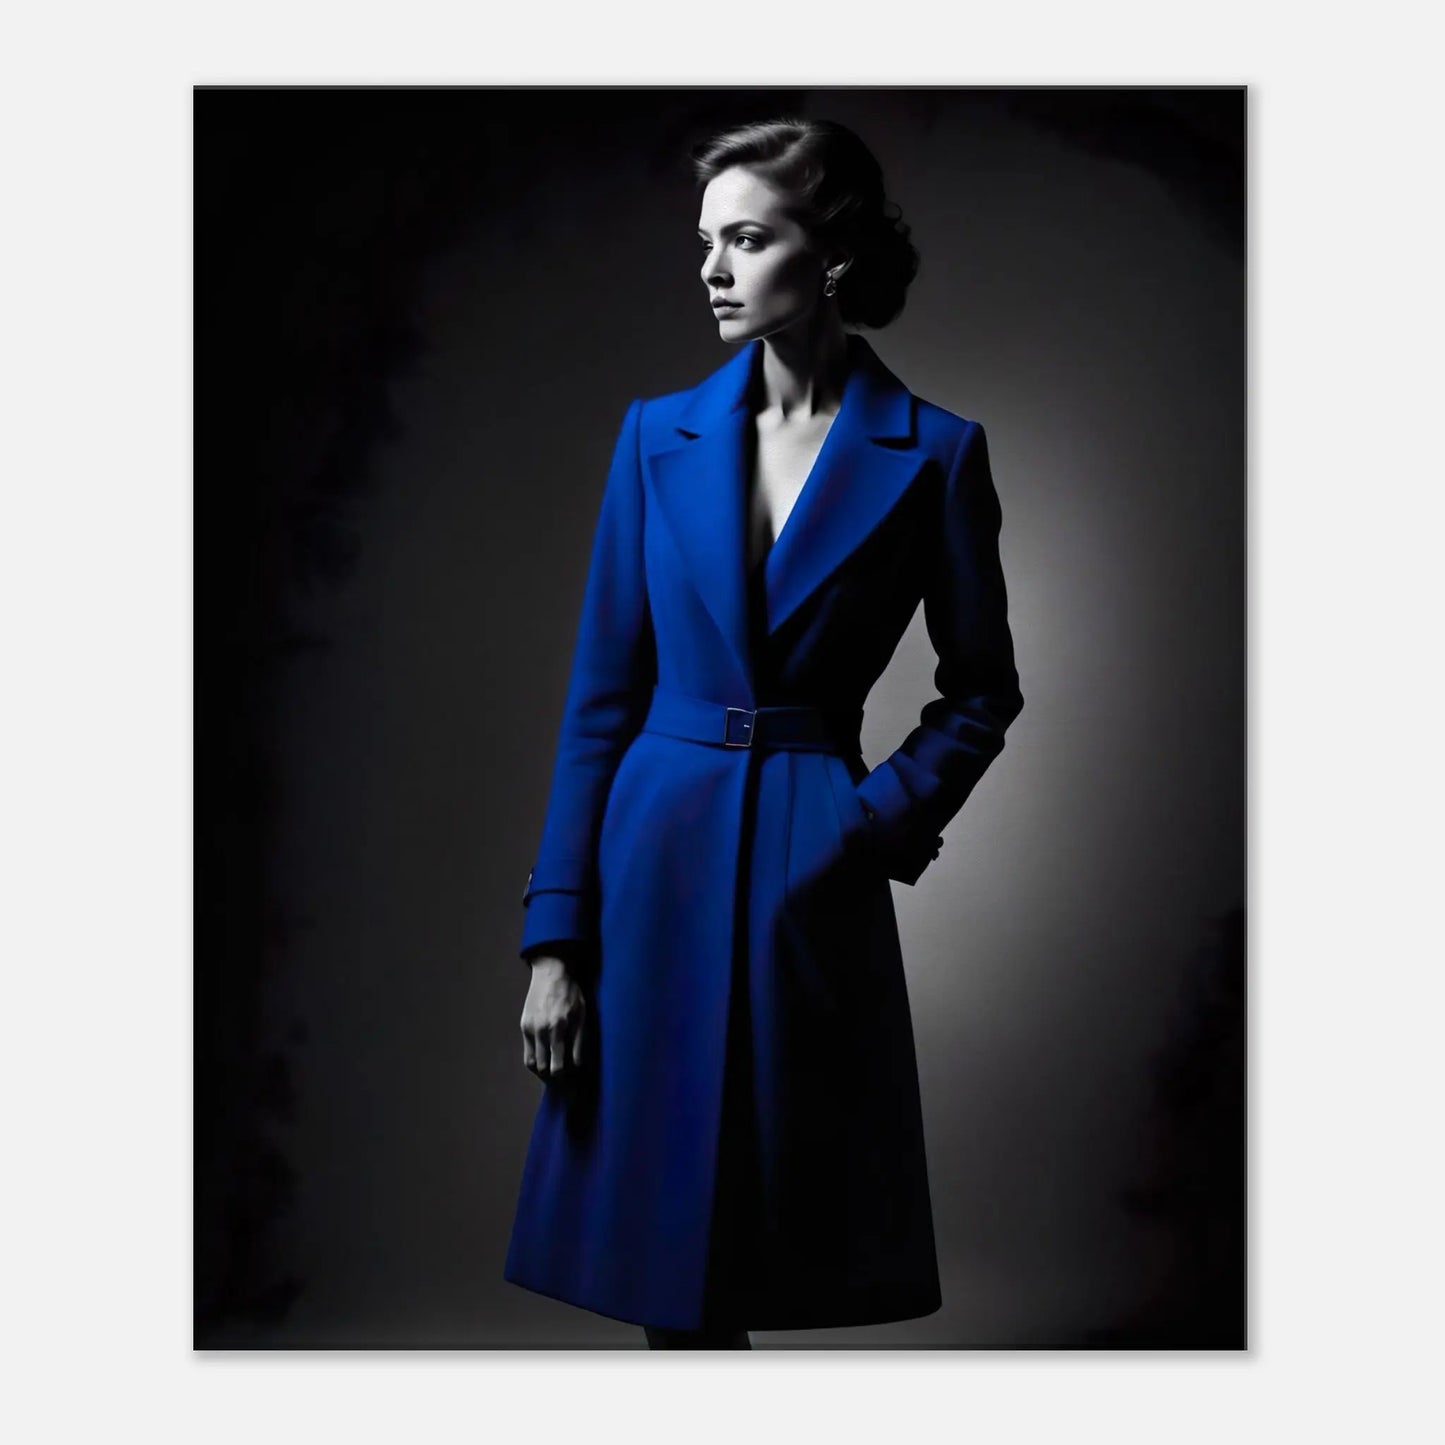 Leinwandbild - Frau im blauen Mantel - Schwarz-Weiß Stil, KI-Kunst - RolConArt, Schwarz-Weiß mit Akzentfarben, 50x60-cm-20x24